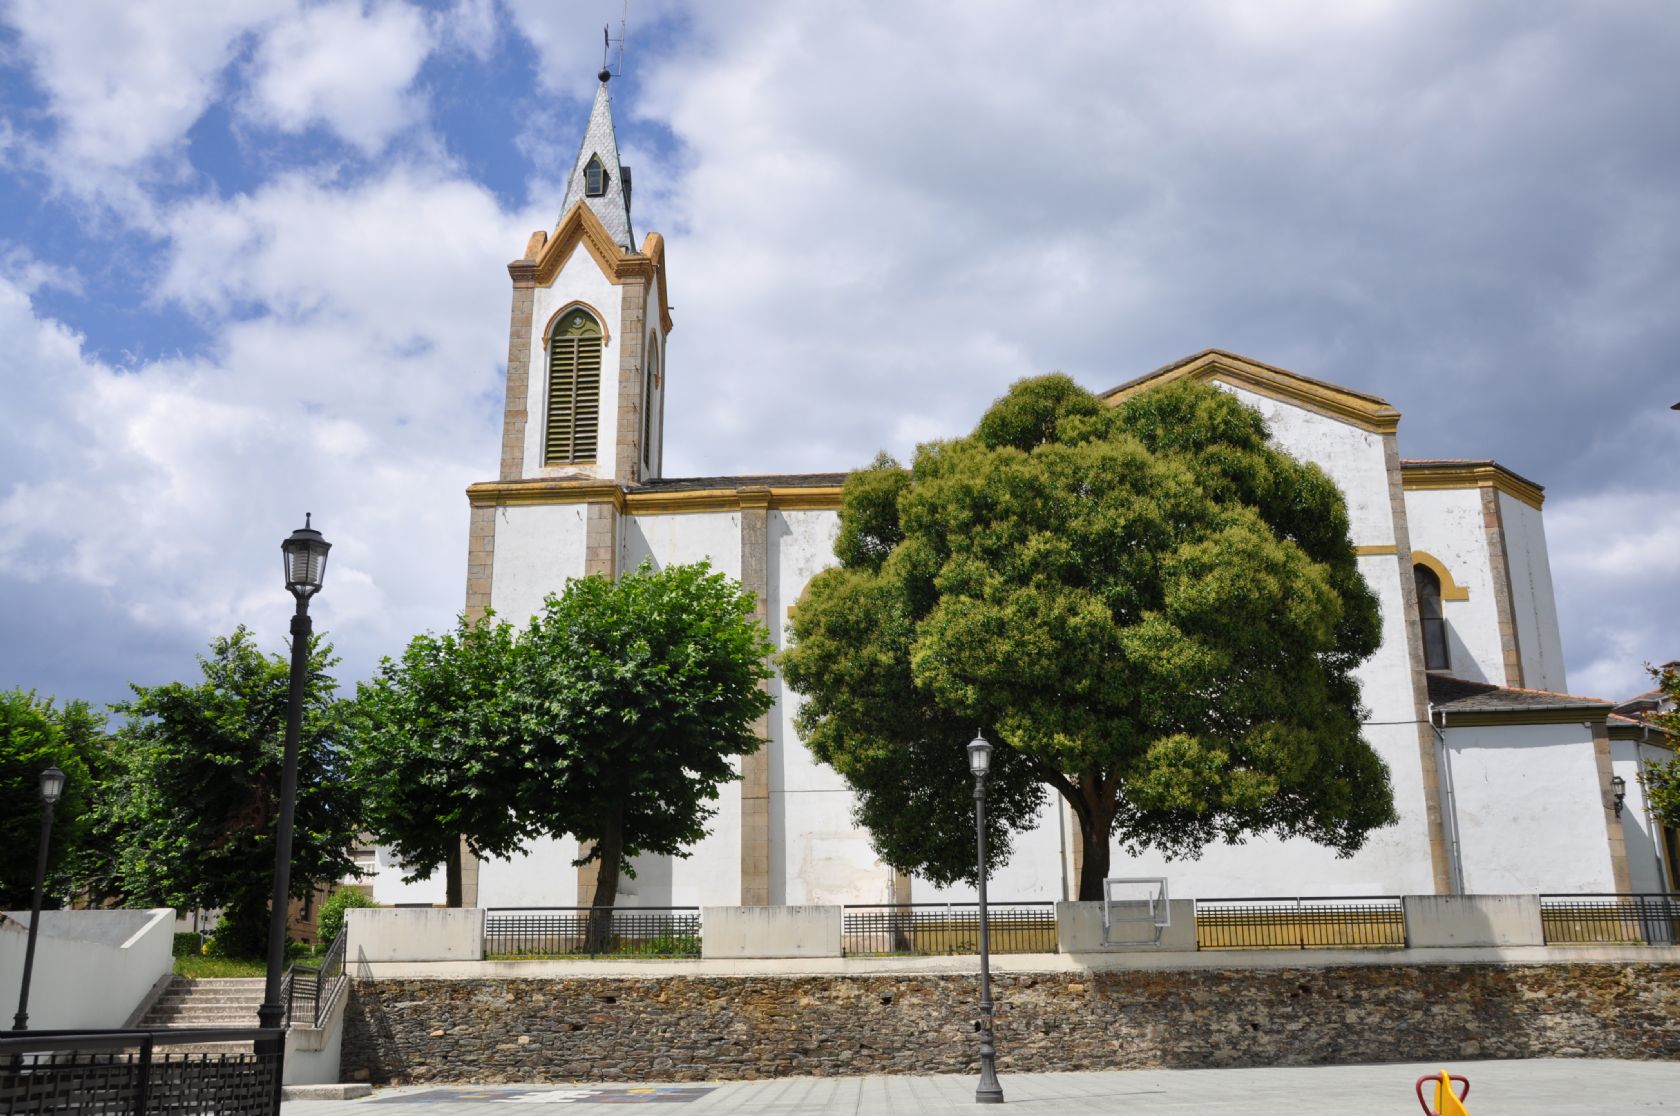 Church Our Lady de La Barca